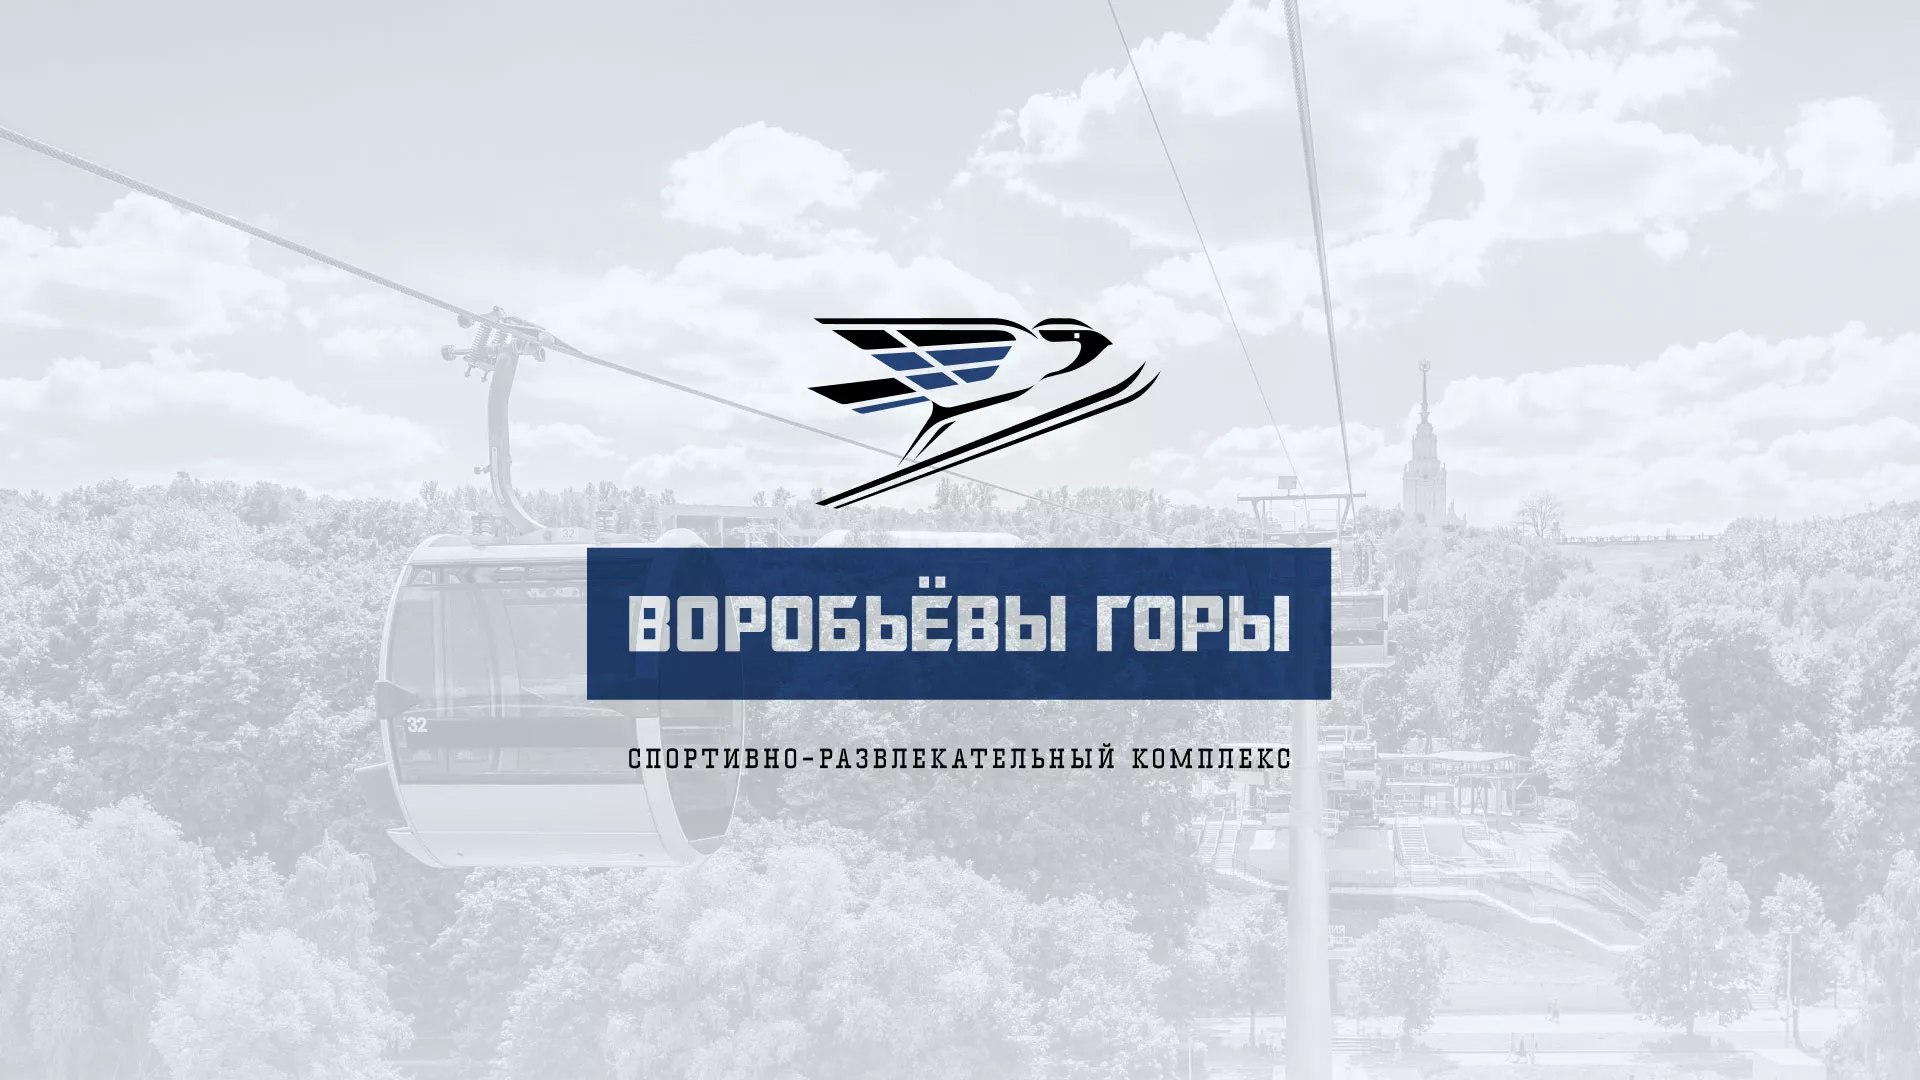 Разработка сайта в Курильске для спортивно-развлекательного комплекса «Воробьёвы горы»